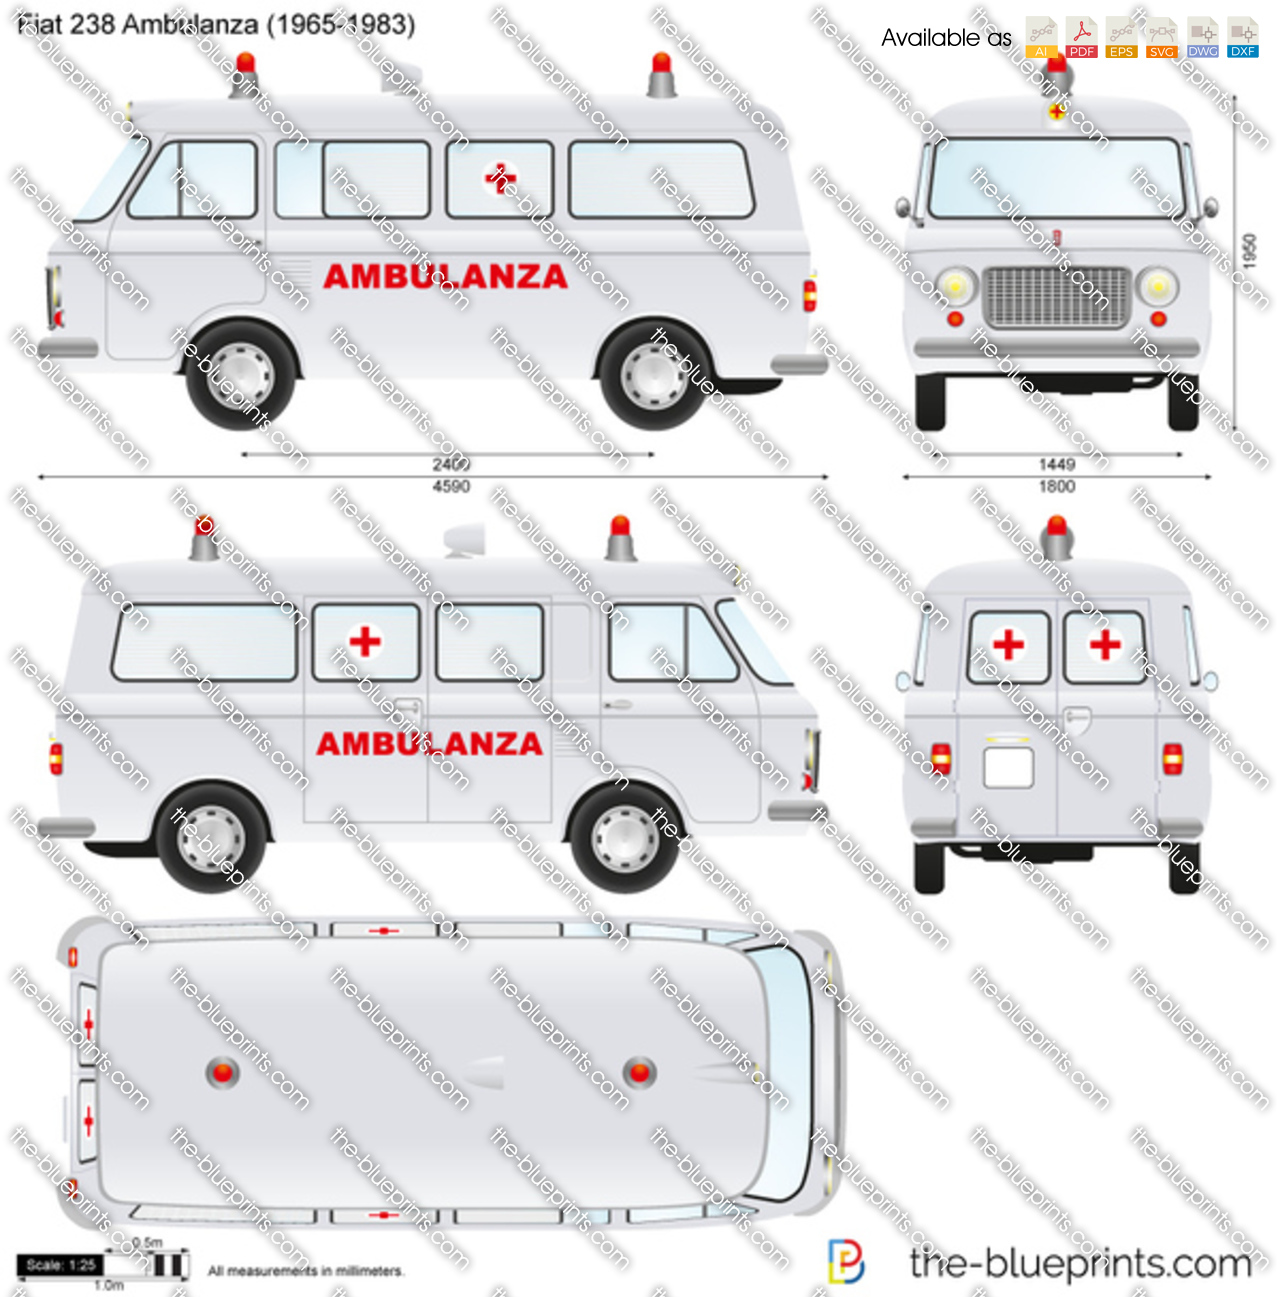 Fiat 238 Ambulanza